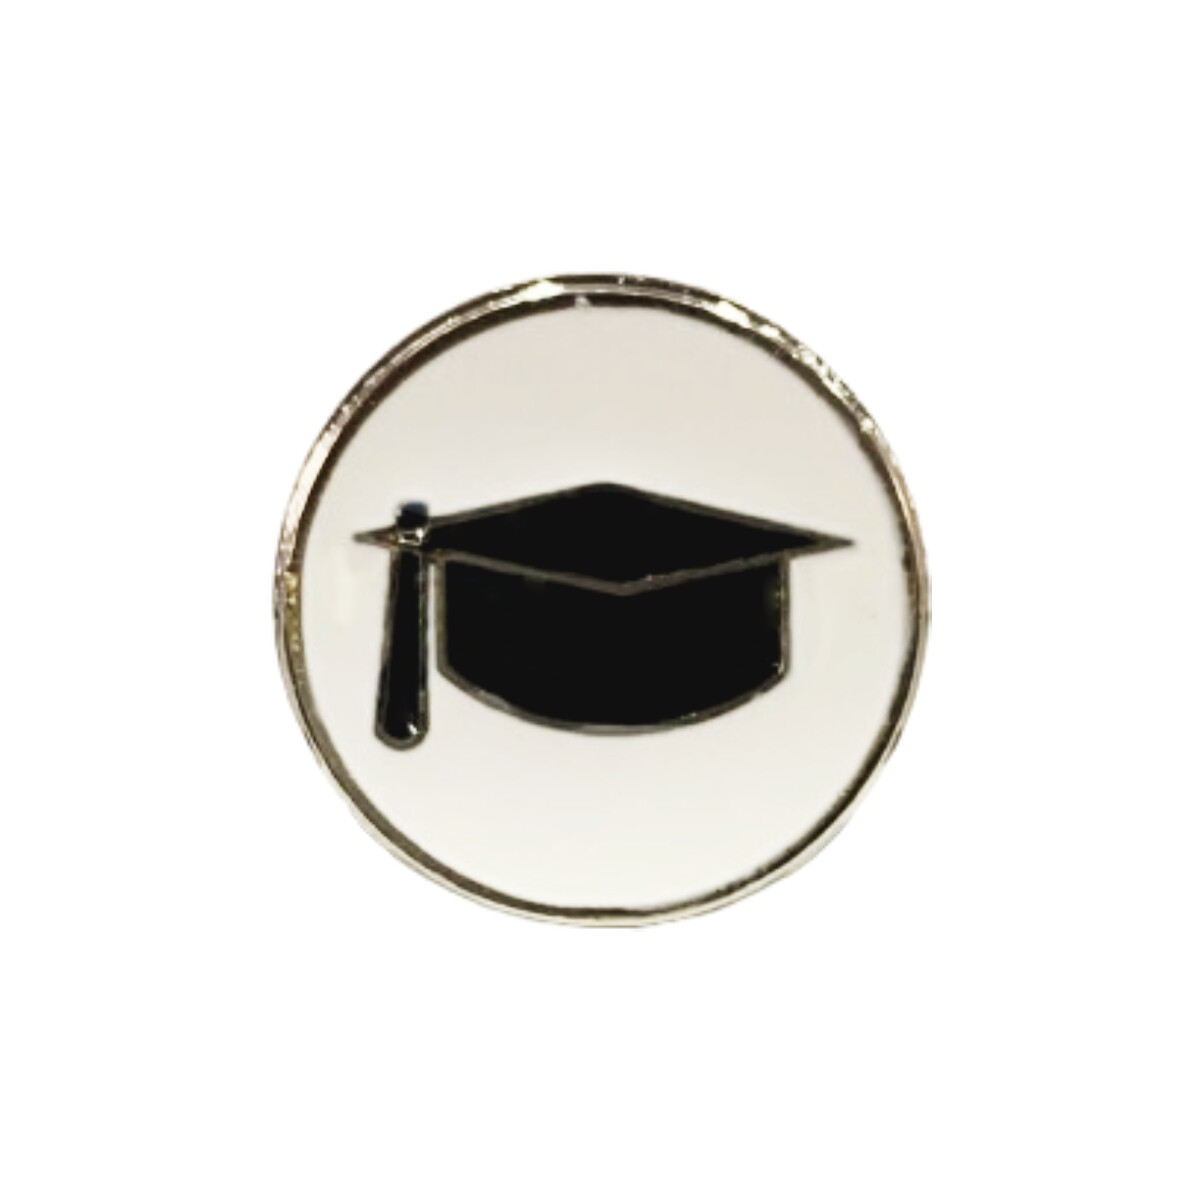 Pin distintivo para oficiales del sub escalafón con título universitario 